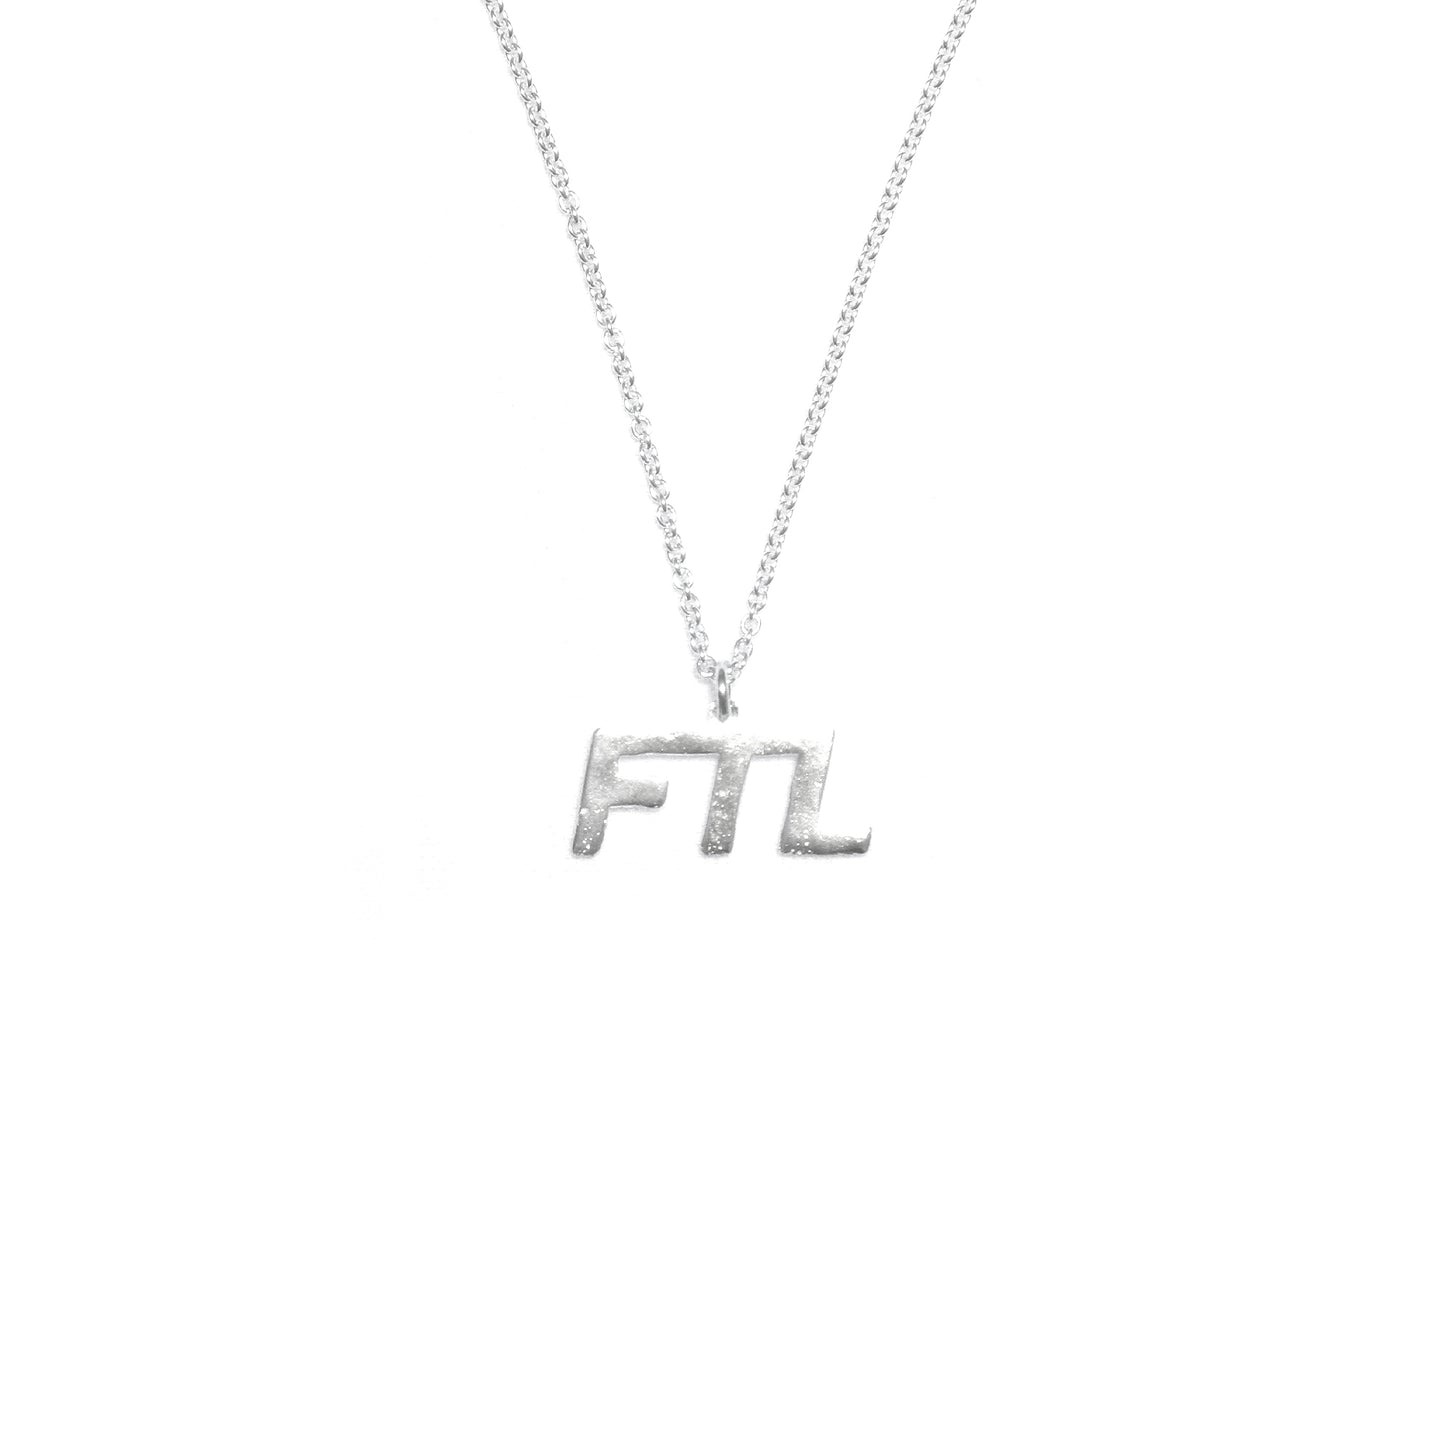 FTL - OG Necklace